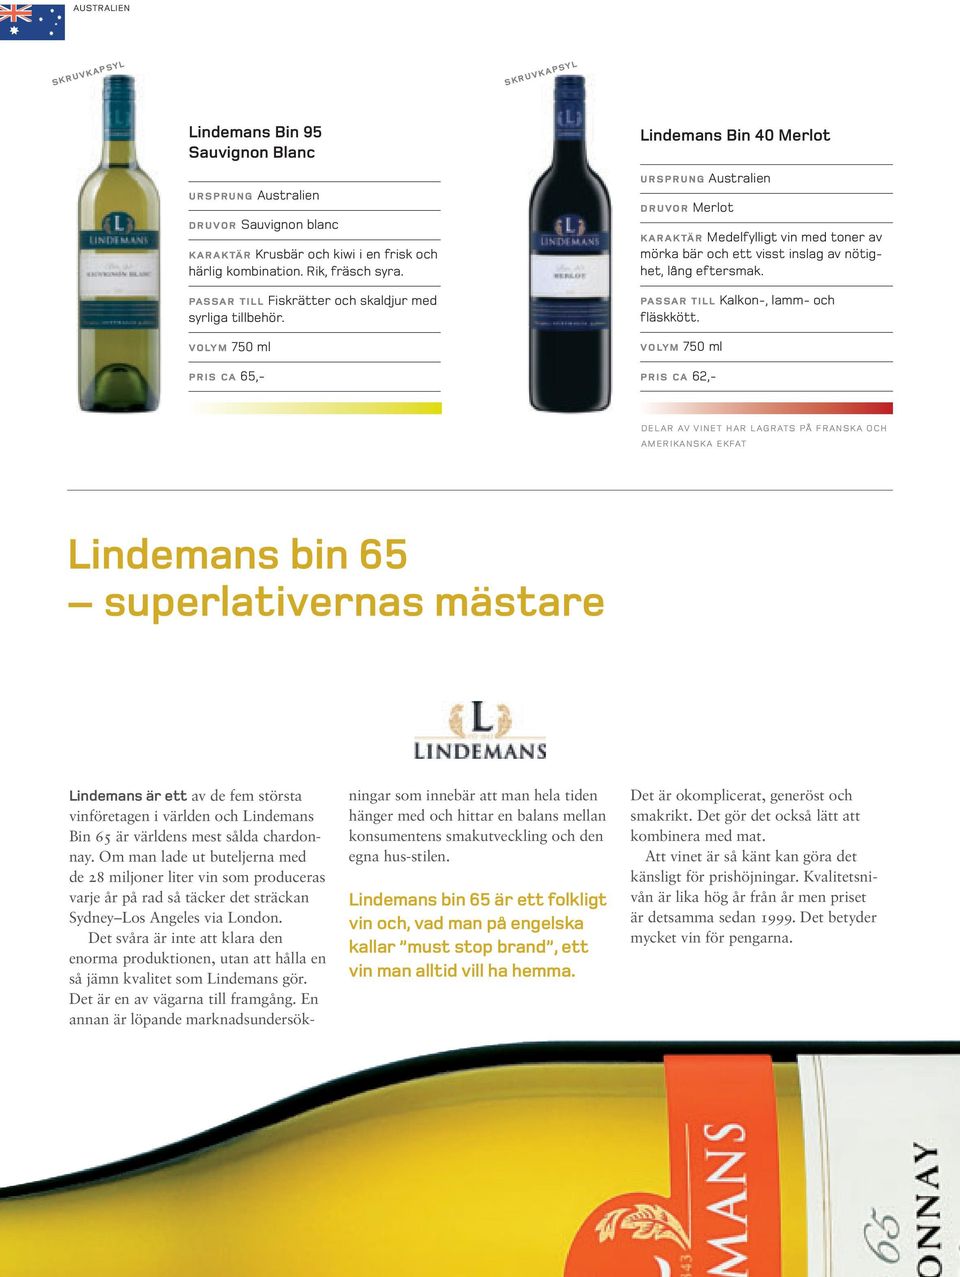 pris ca 65,- Lindemans Bin 40 Merlot ursprung druvor Merlot karaktär Medelfylligt vin med toner av mörka bär och ett visst inslag av nötighet, lång eftersmak.